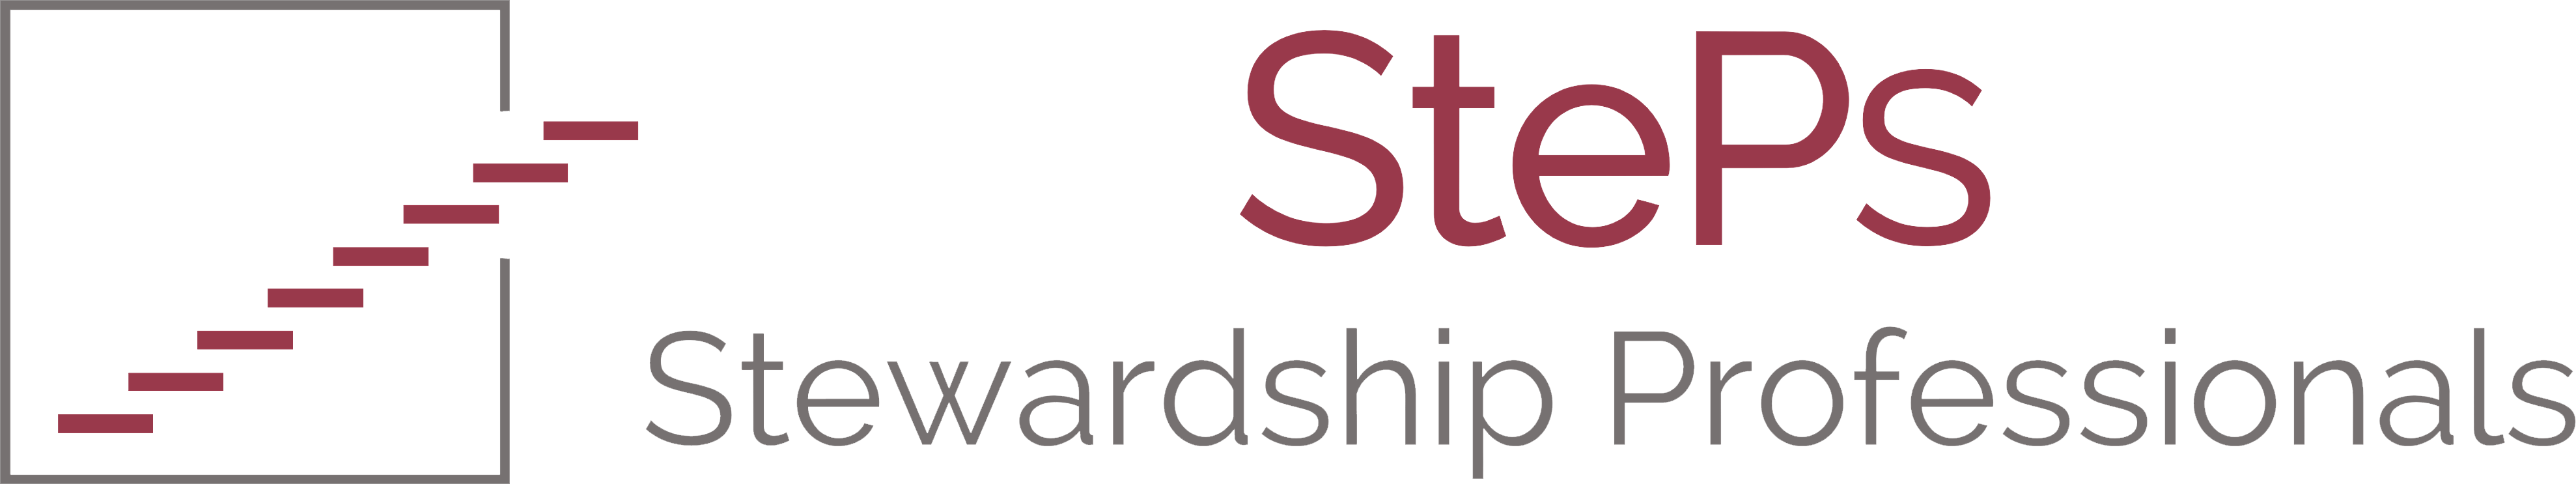 StePs - Stewardship Professionals